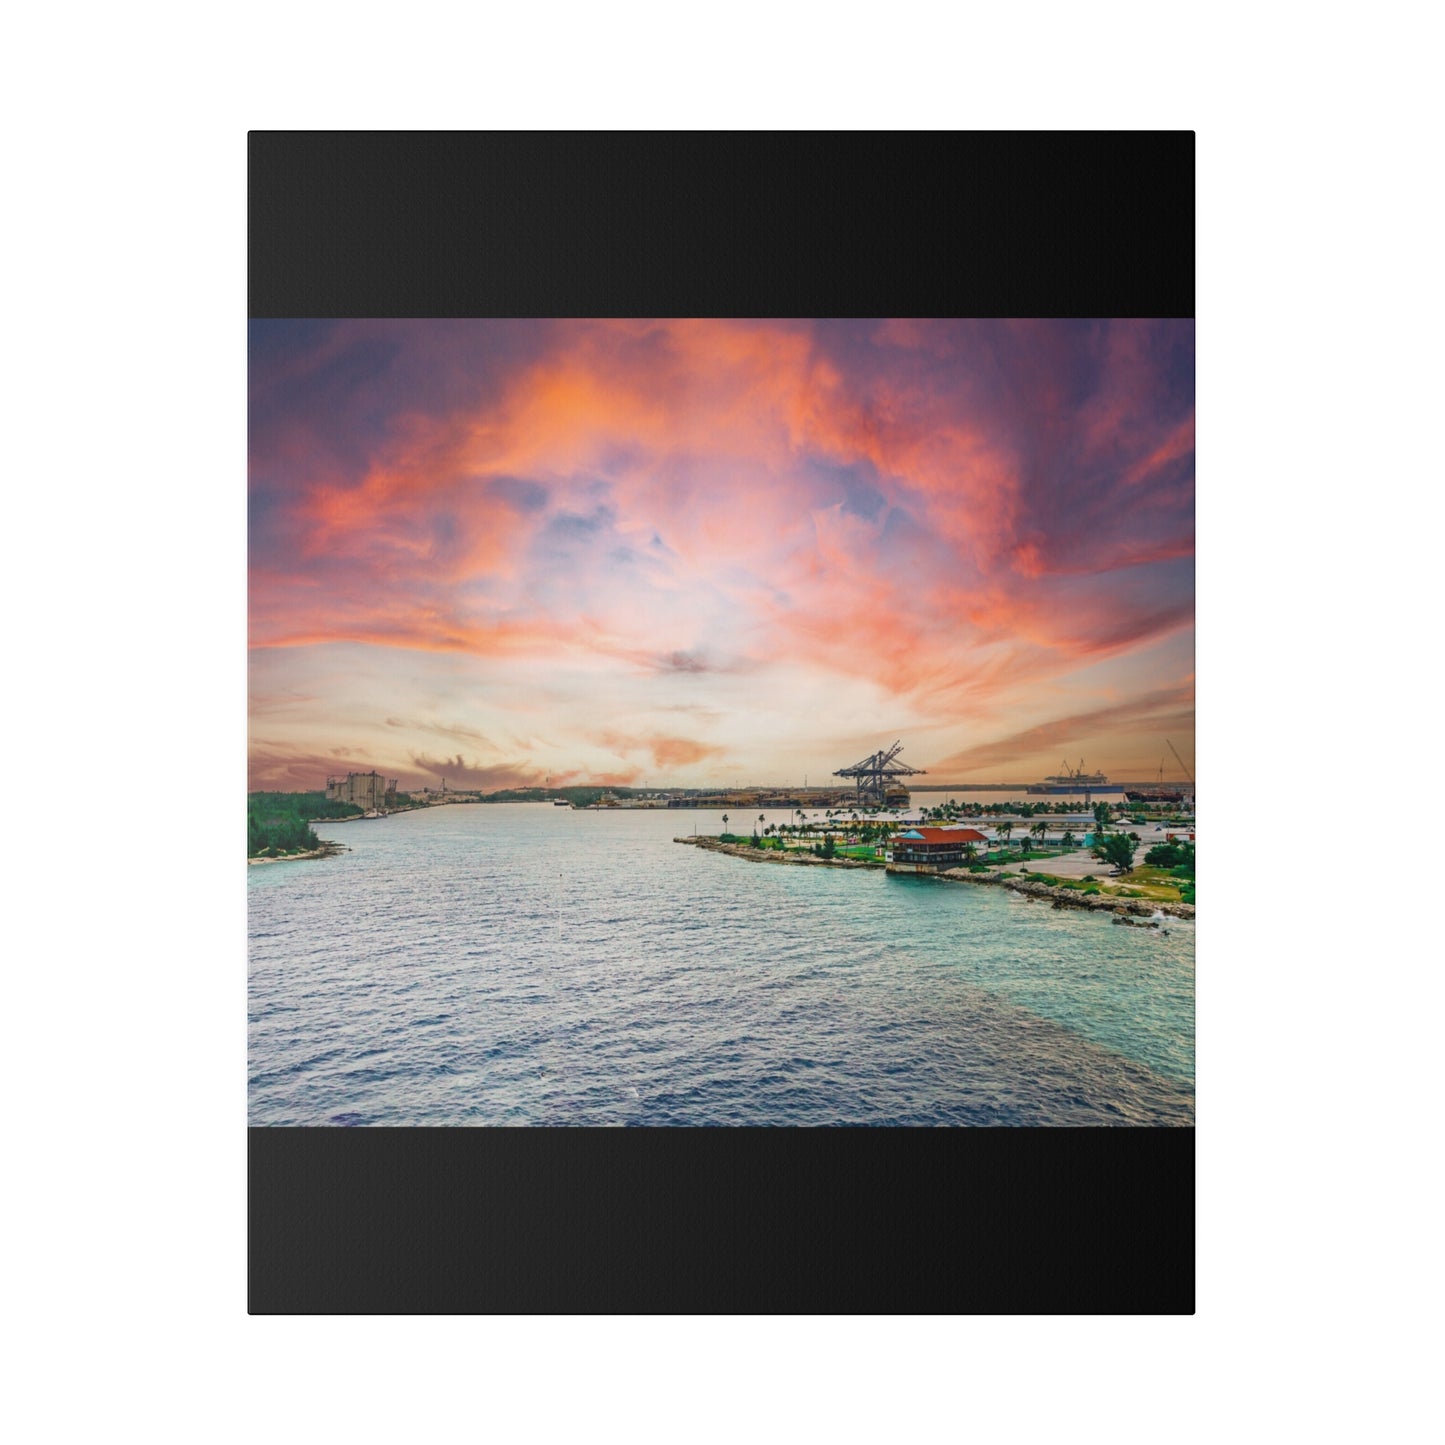 Sunrise over Freeport Bahamas